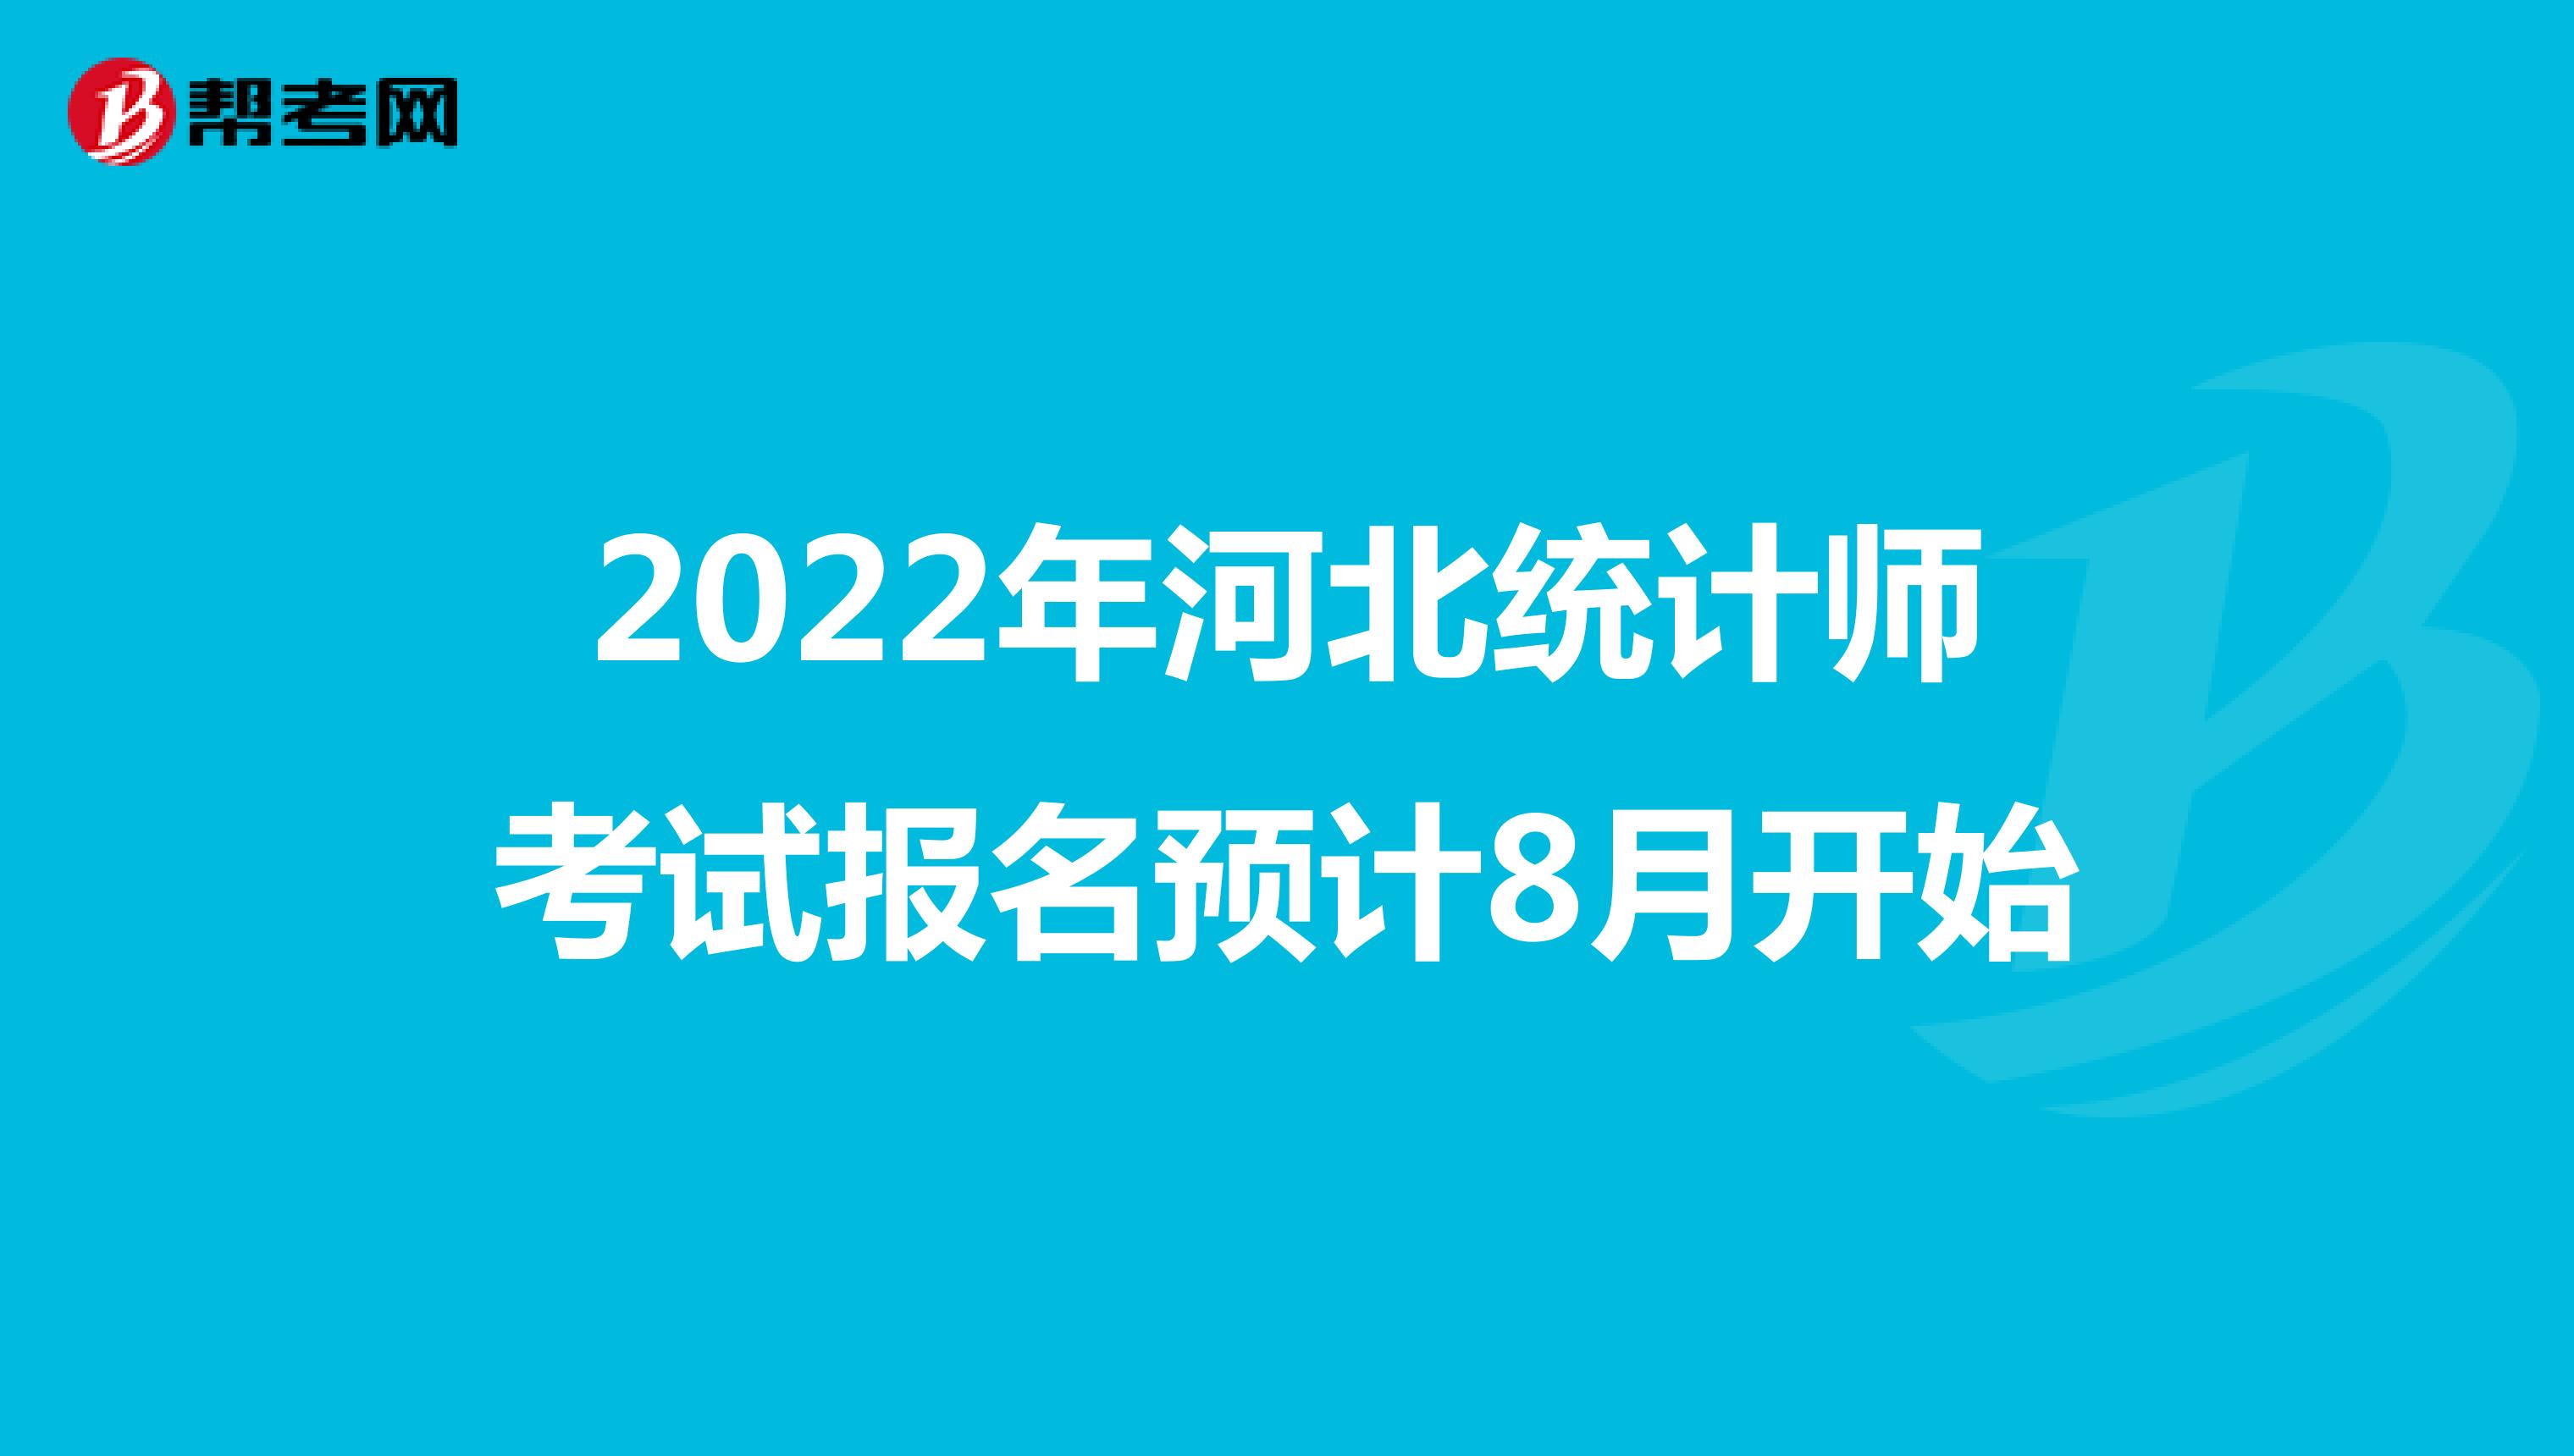 2022年河北统计师考试报名预计8月开始